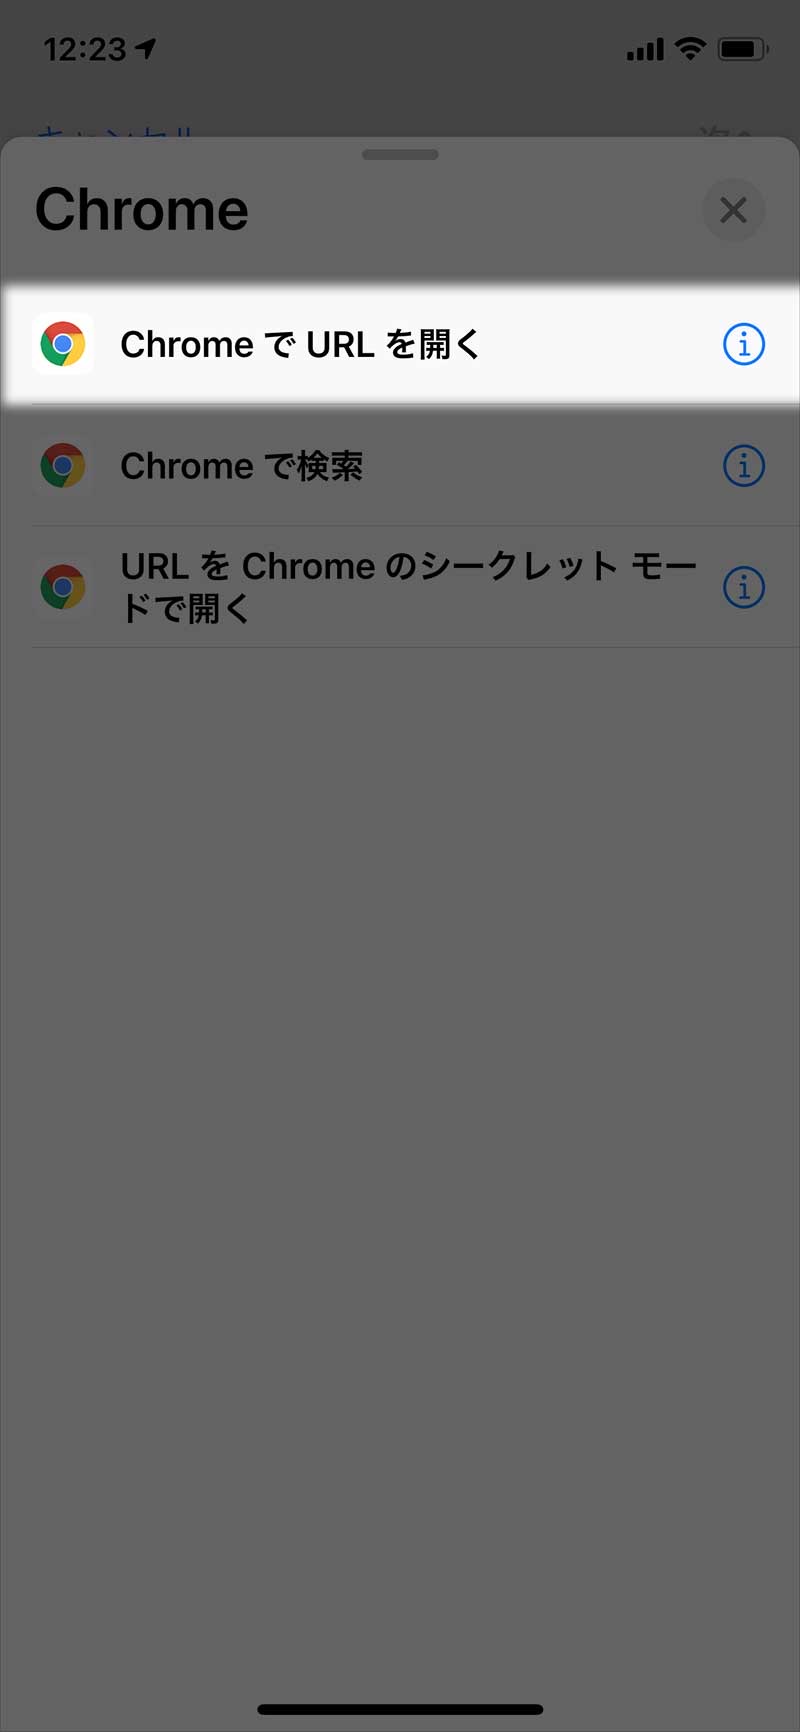 「Chrome でURL を開く」を選択